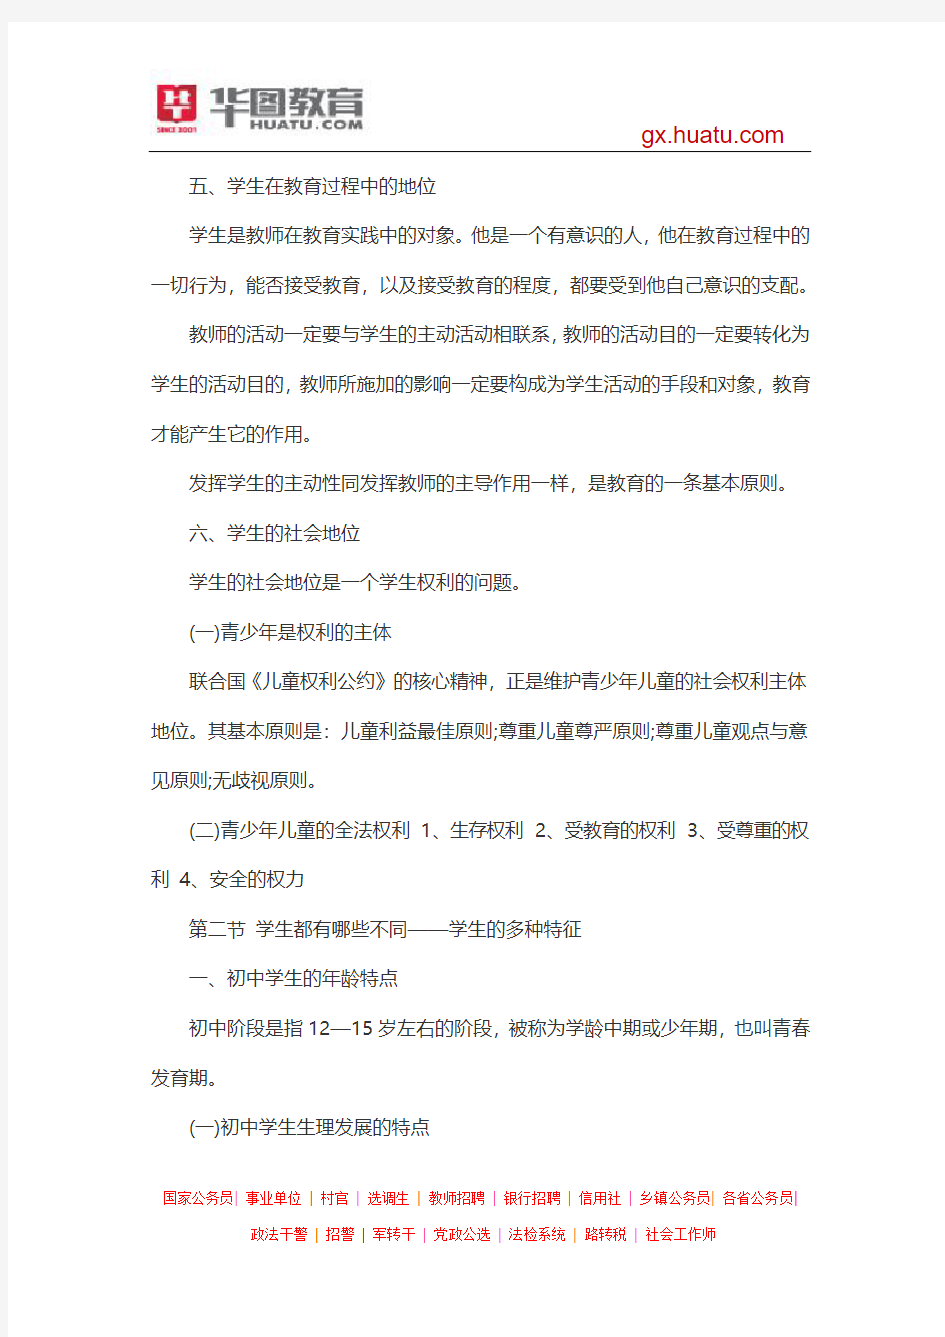 2015广西中小学教师招考笔试参考资料下载地址